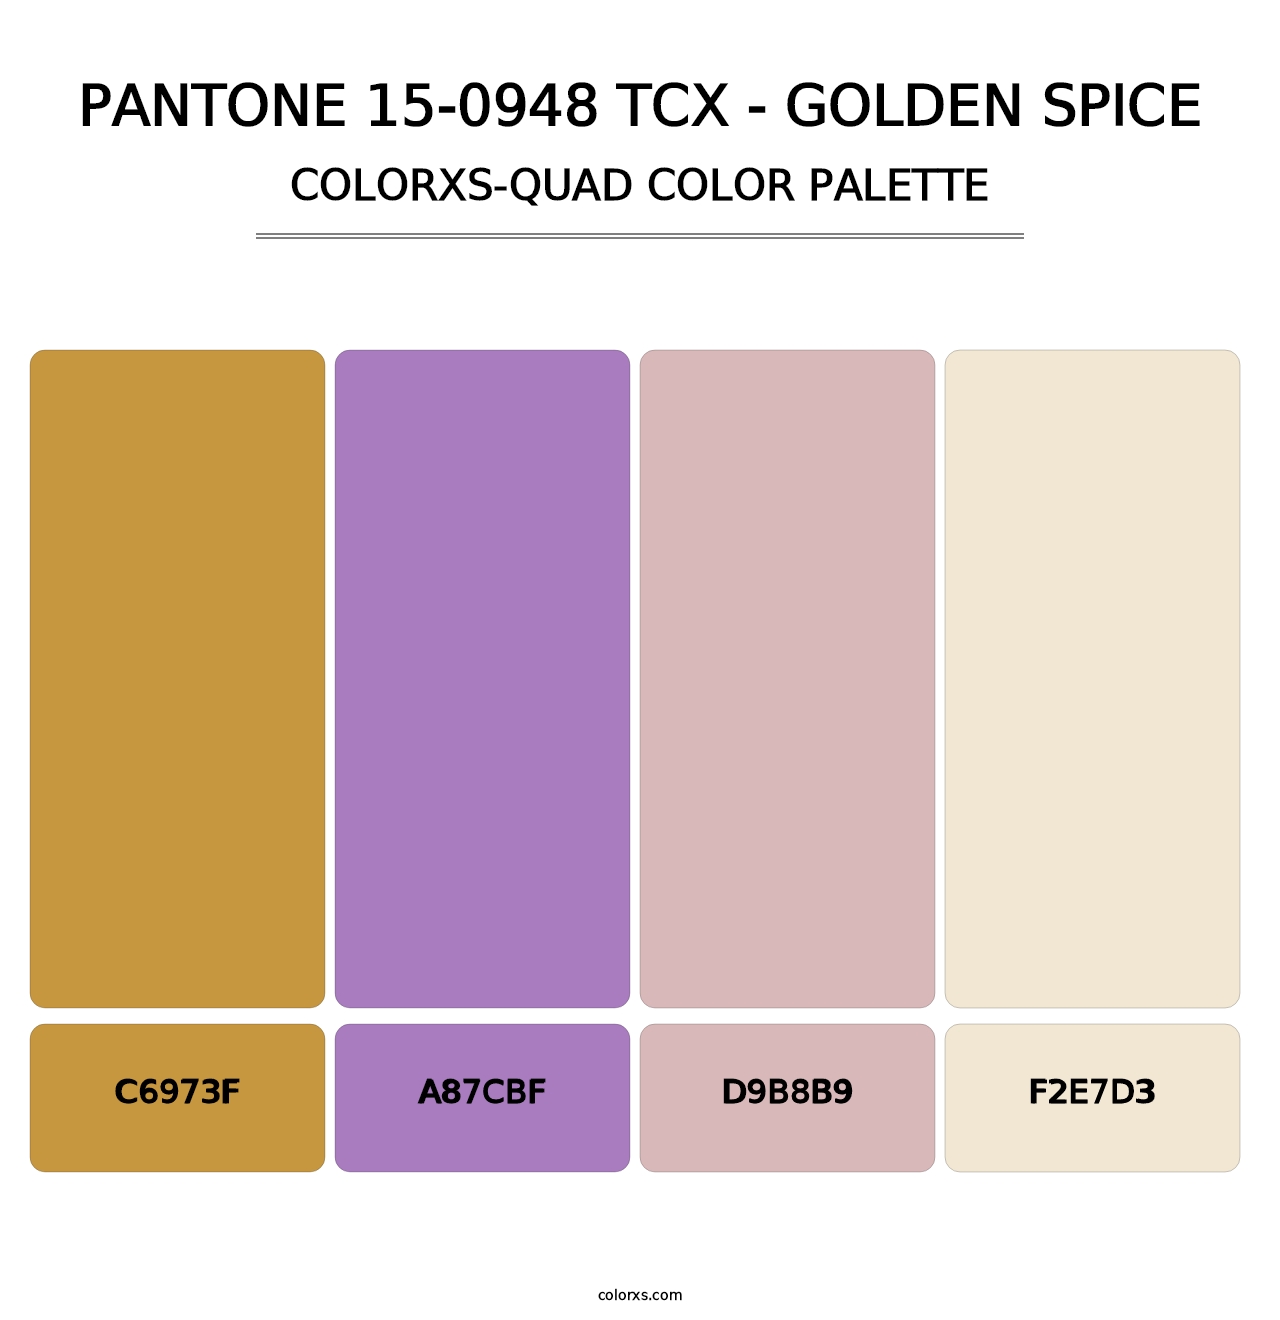 PANTONE 15-0948 TCX - Golden Spice - Colorxs Quad Palette